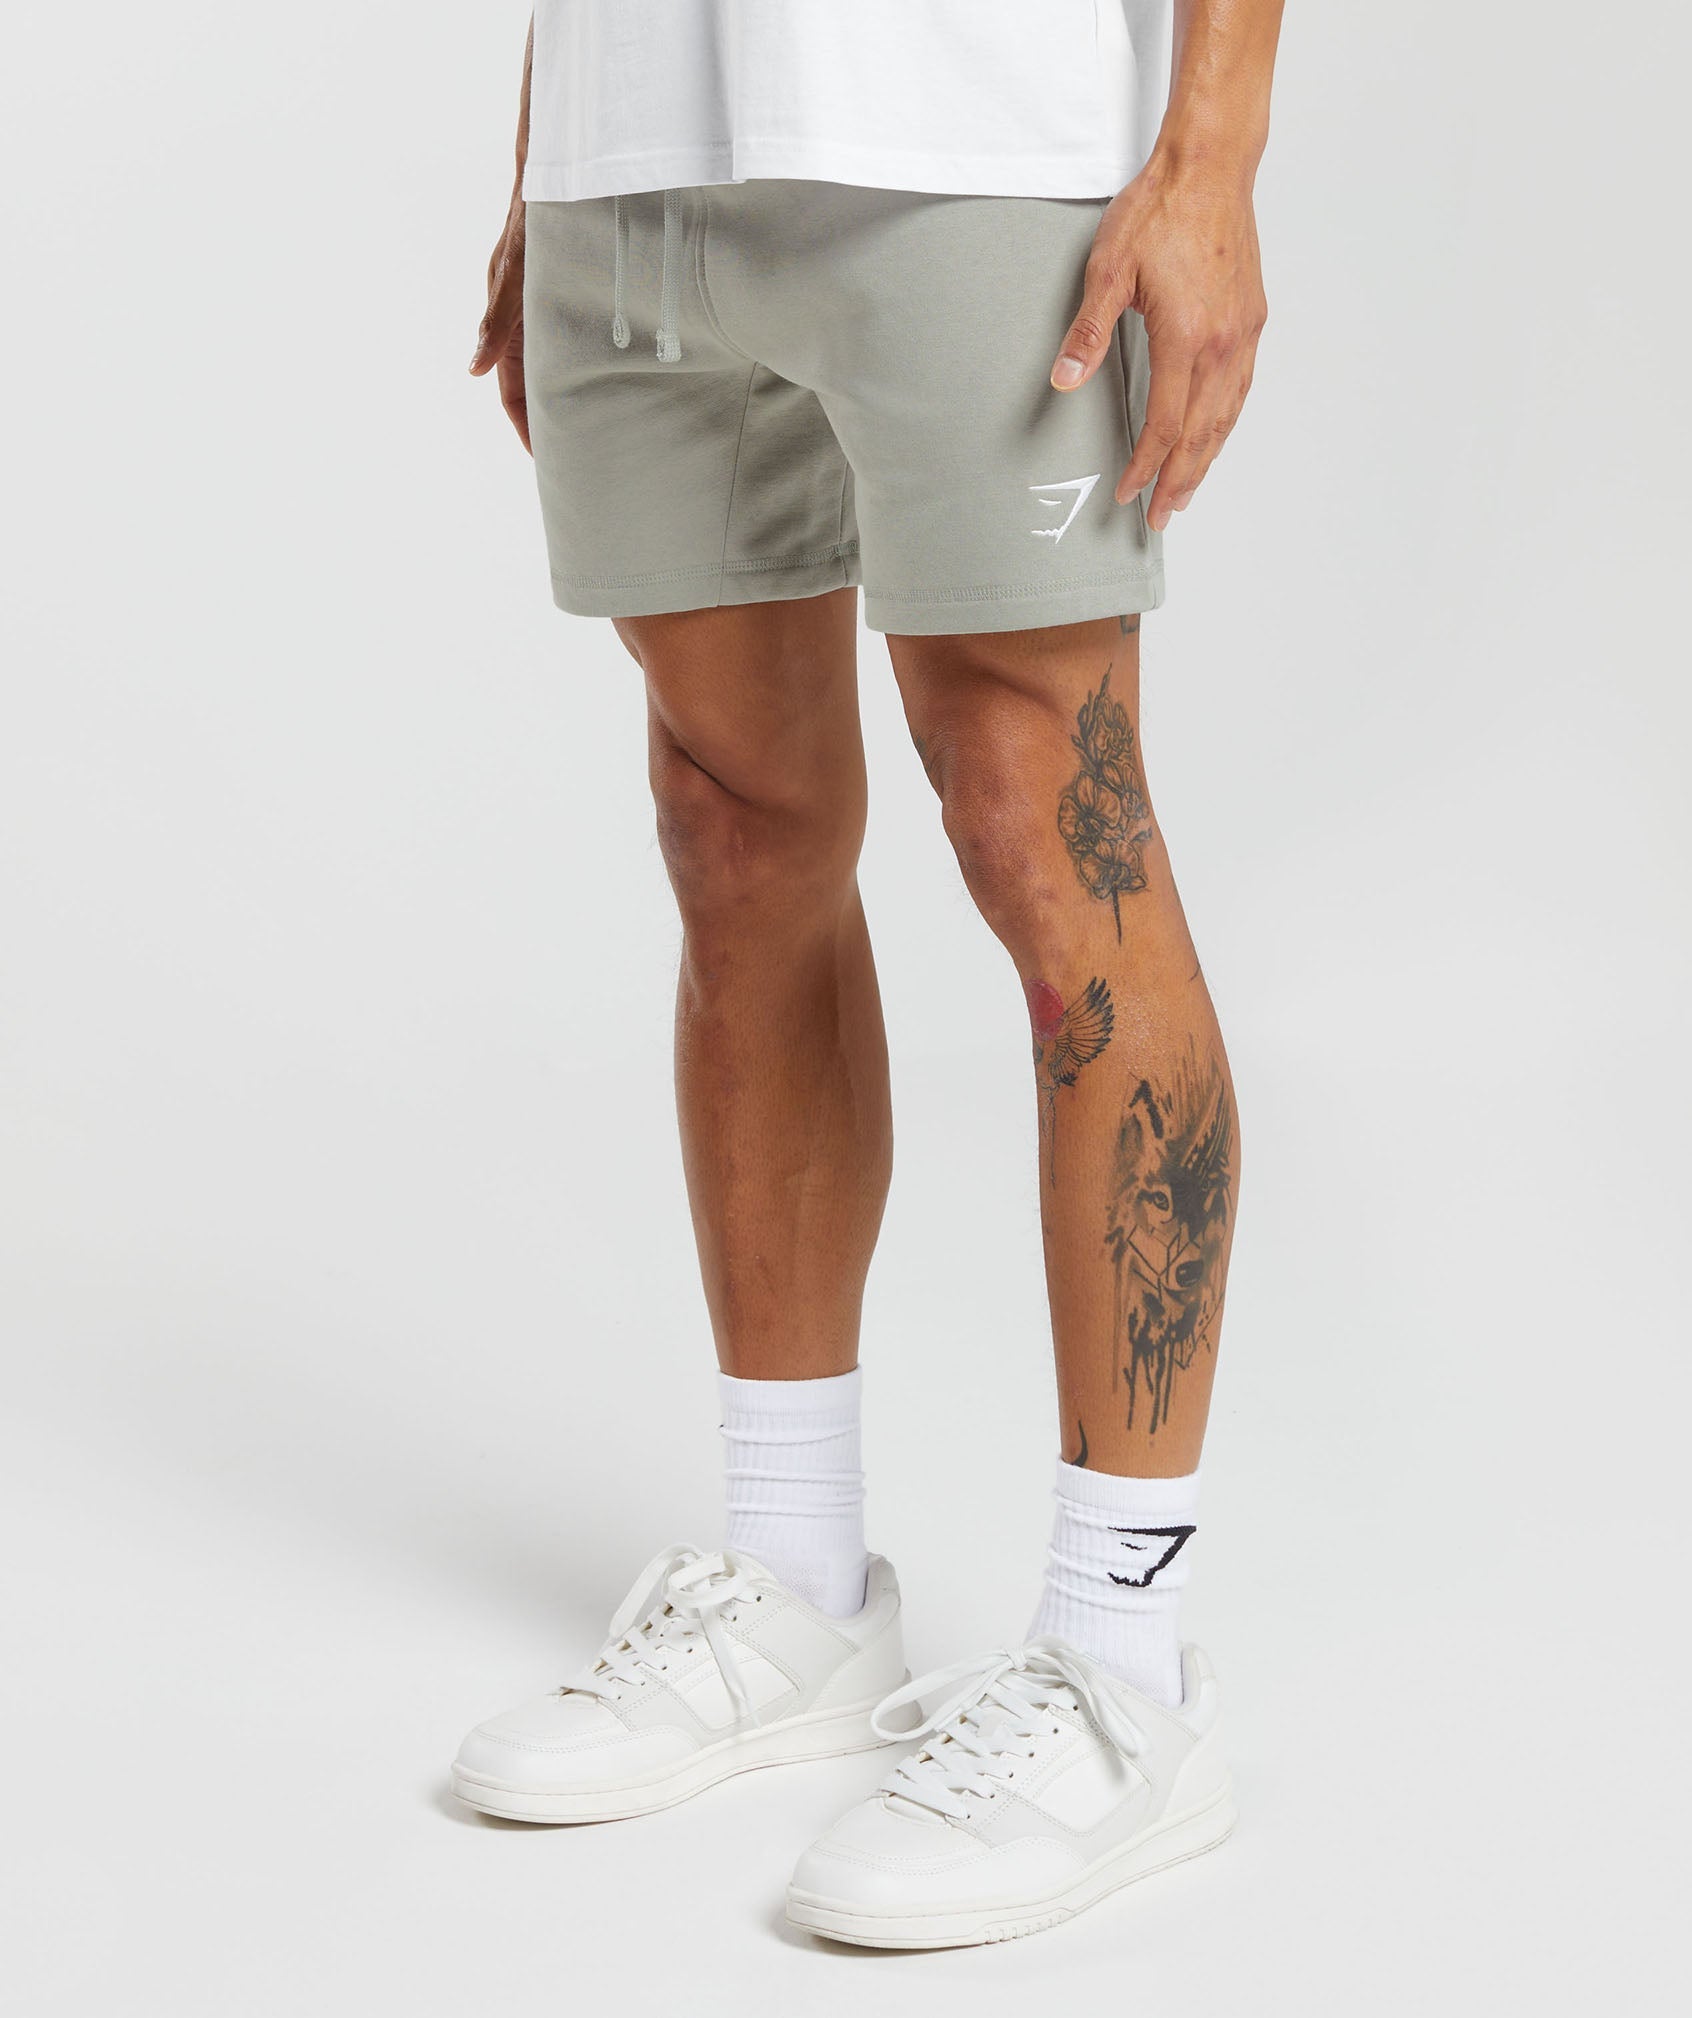 Crest 7" Shorts product image 3